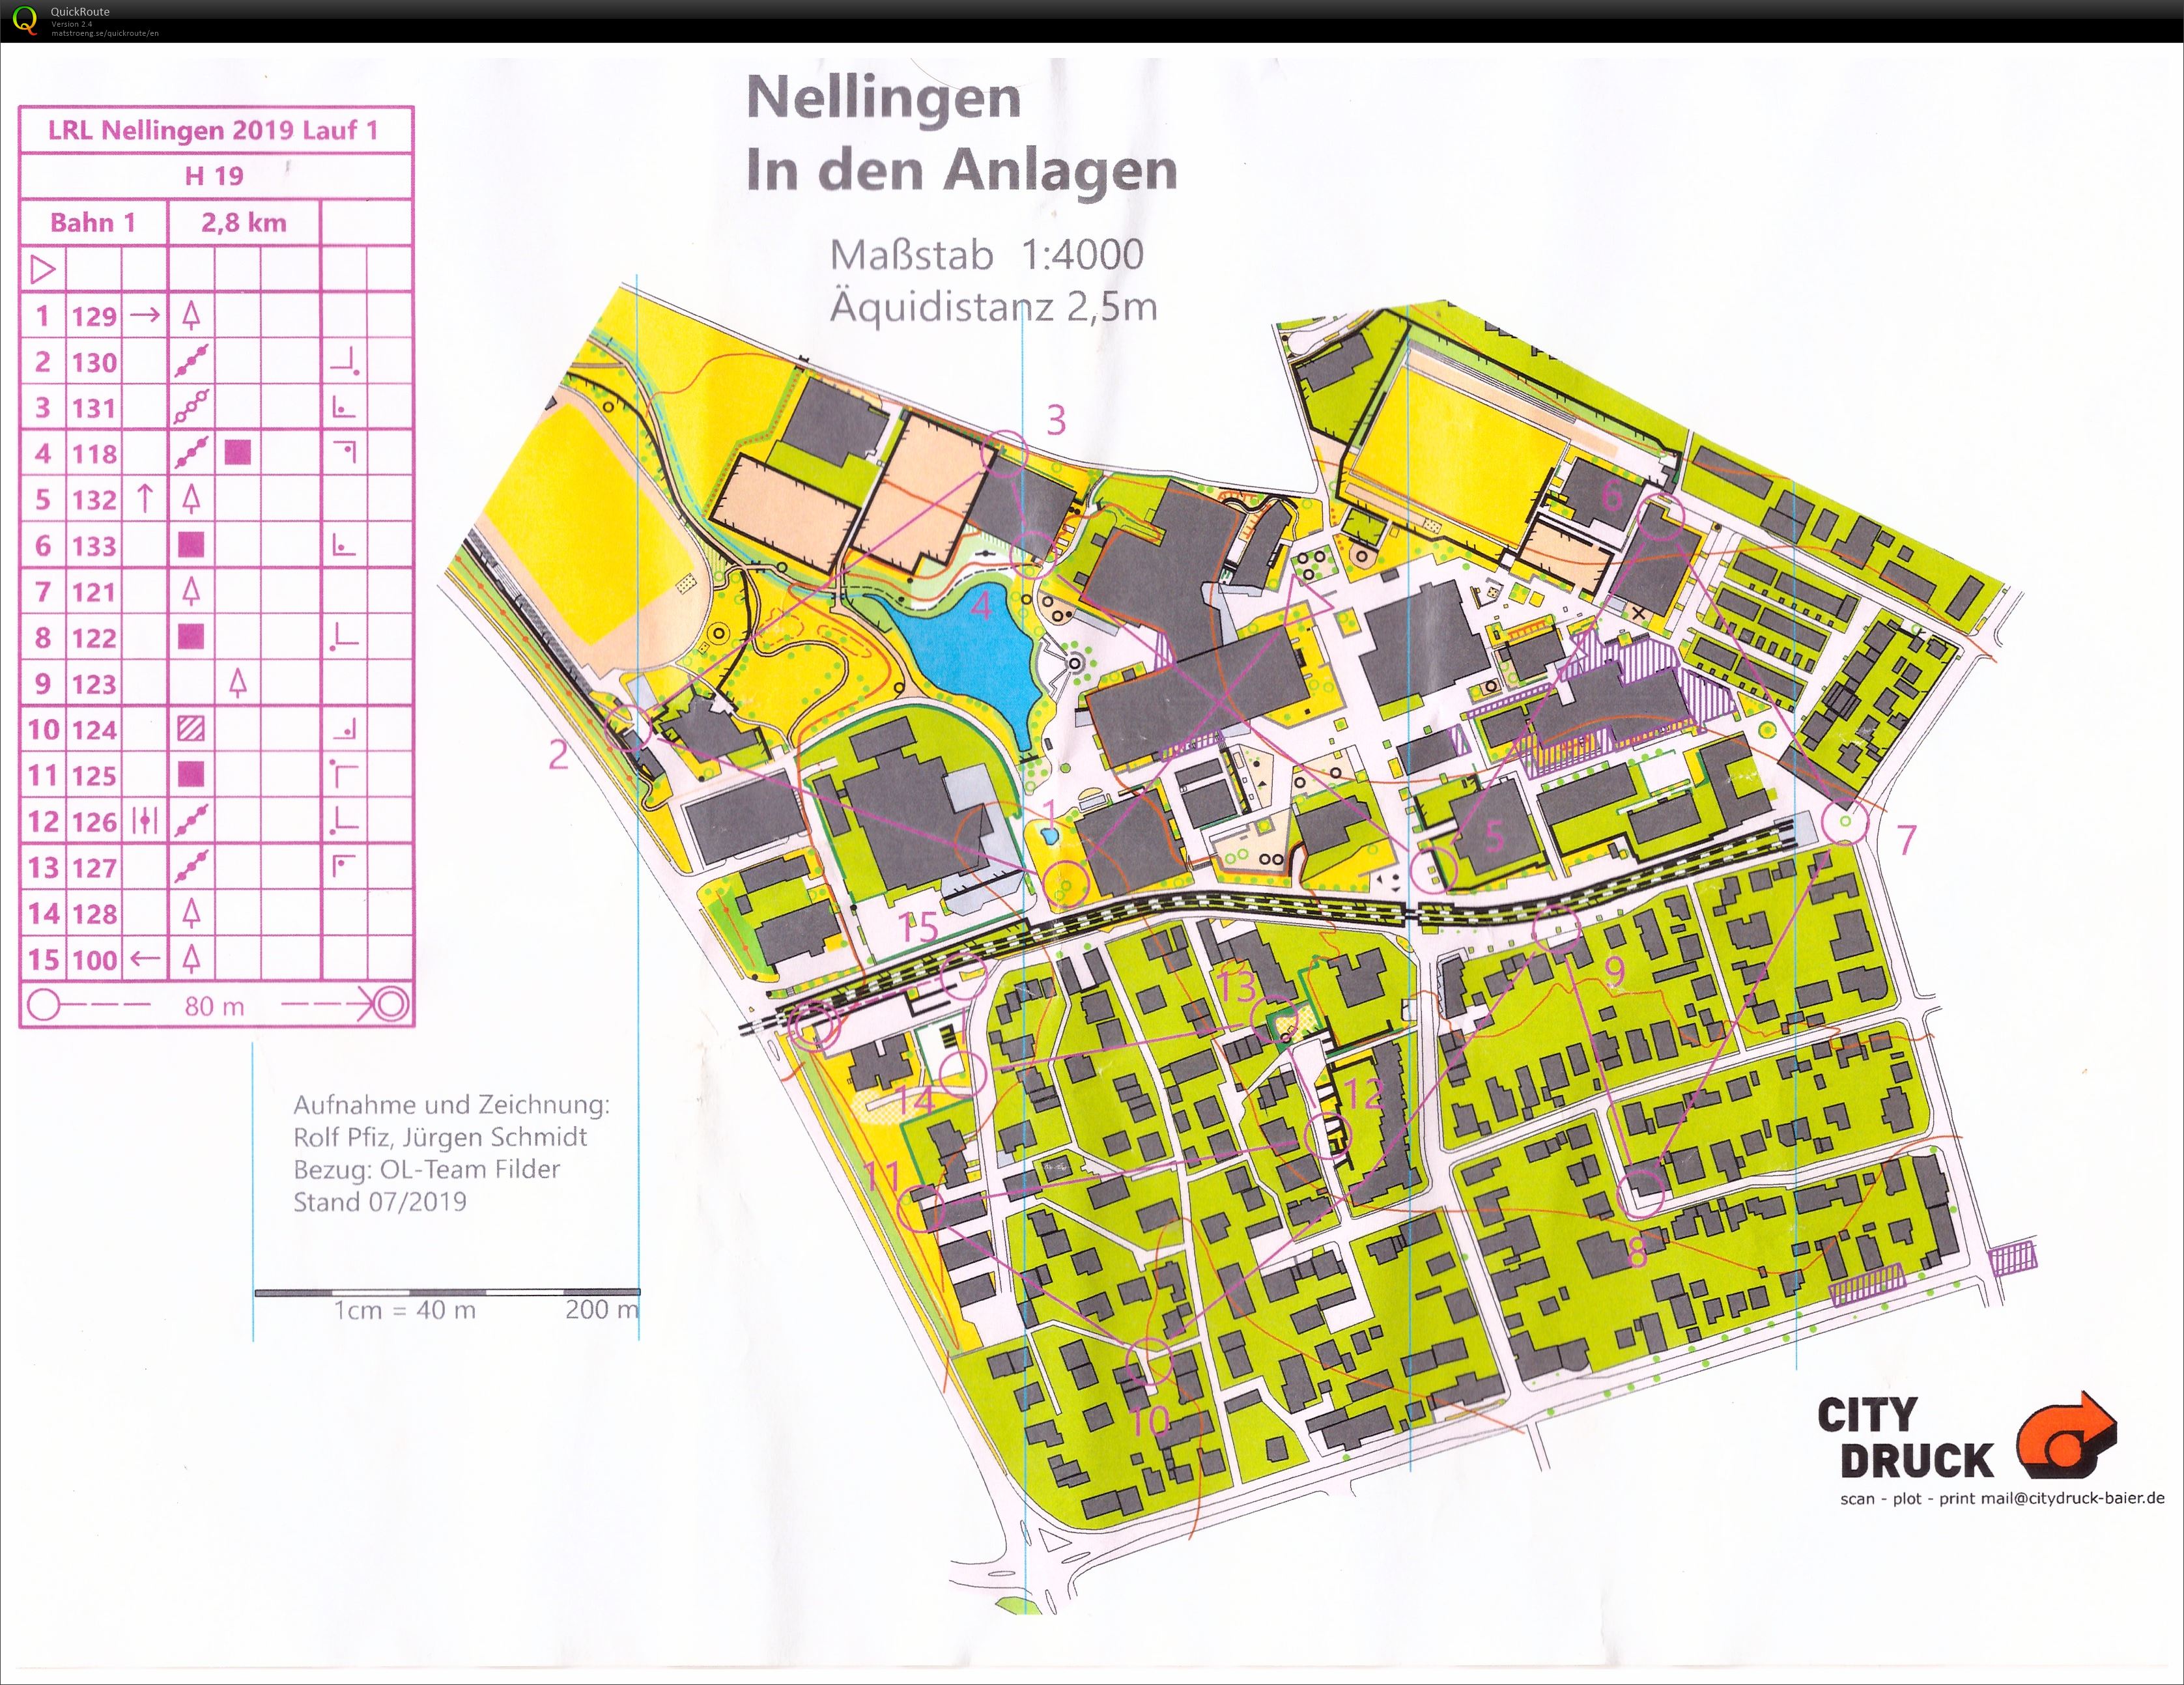 Regional Ranking Event Nellingen Race 1 (20/07/2019)